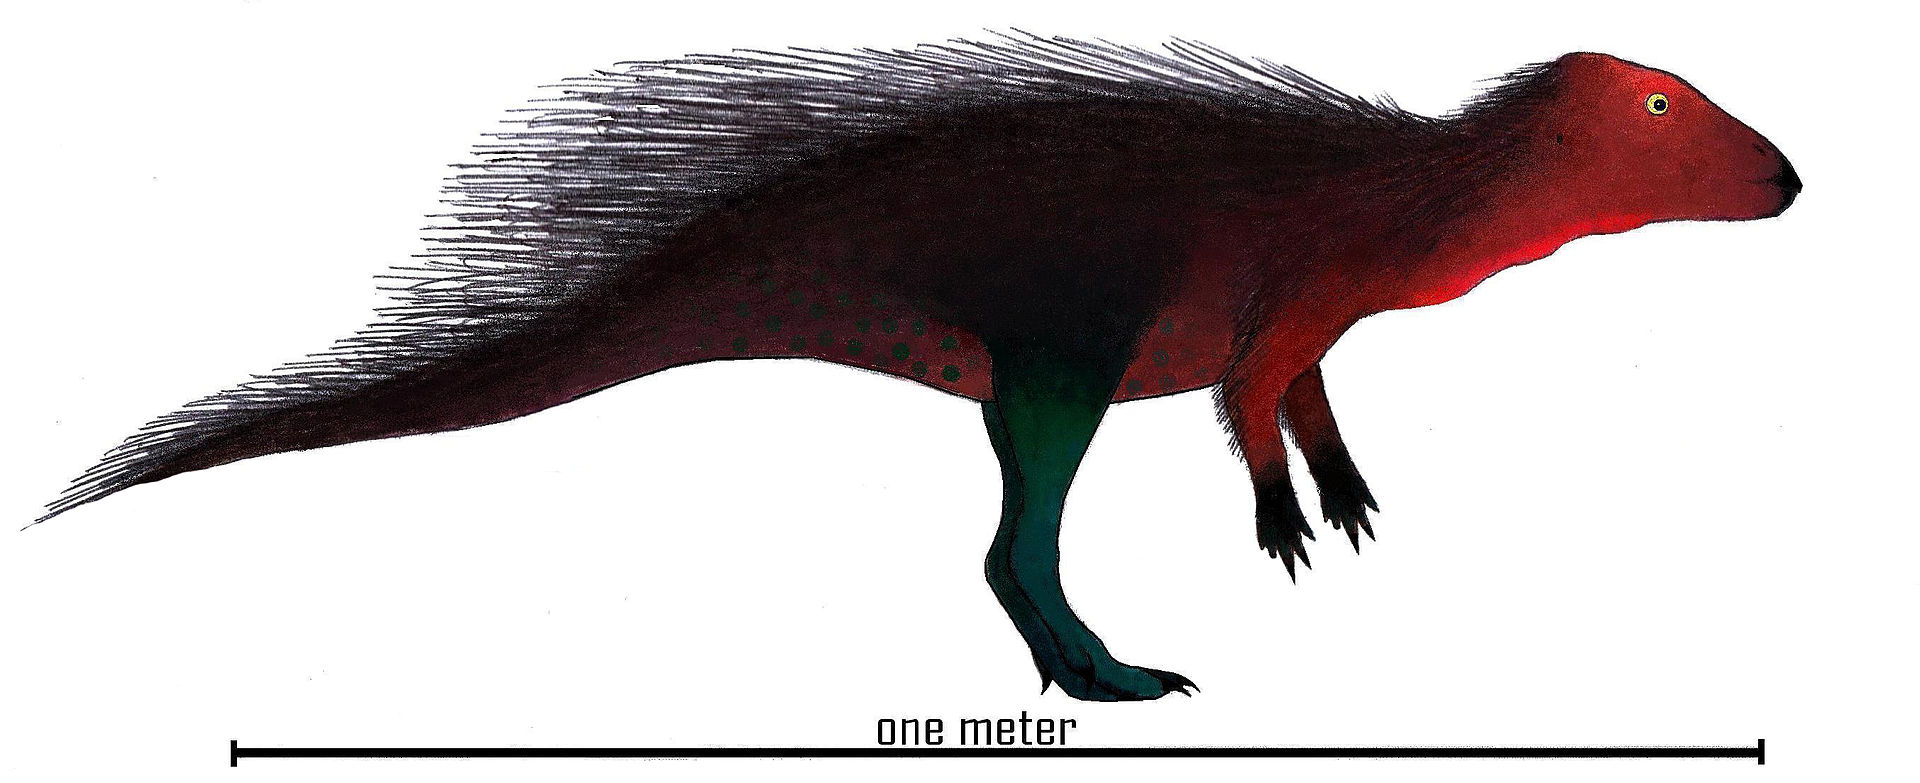 Rekonstrukce přibližné podoby stenopelixe jako vývojově primitivního ceratopse (archaického rohatého dinosaura). Tento asi 1 až 1,5 metru dlouhý a kolem 10 kilogramů vážící býložravý dinosaurus obýval území současného Německa v období rané spodní kří